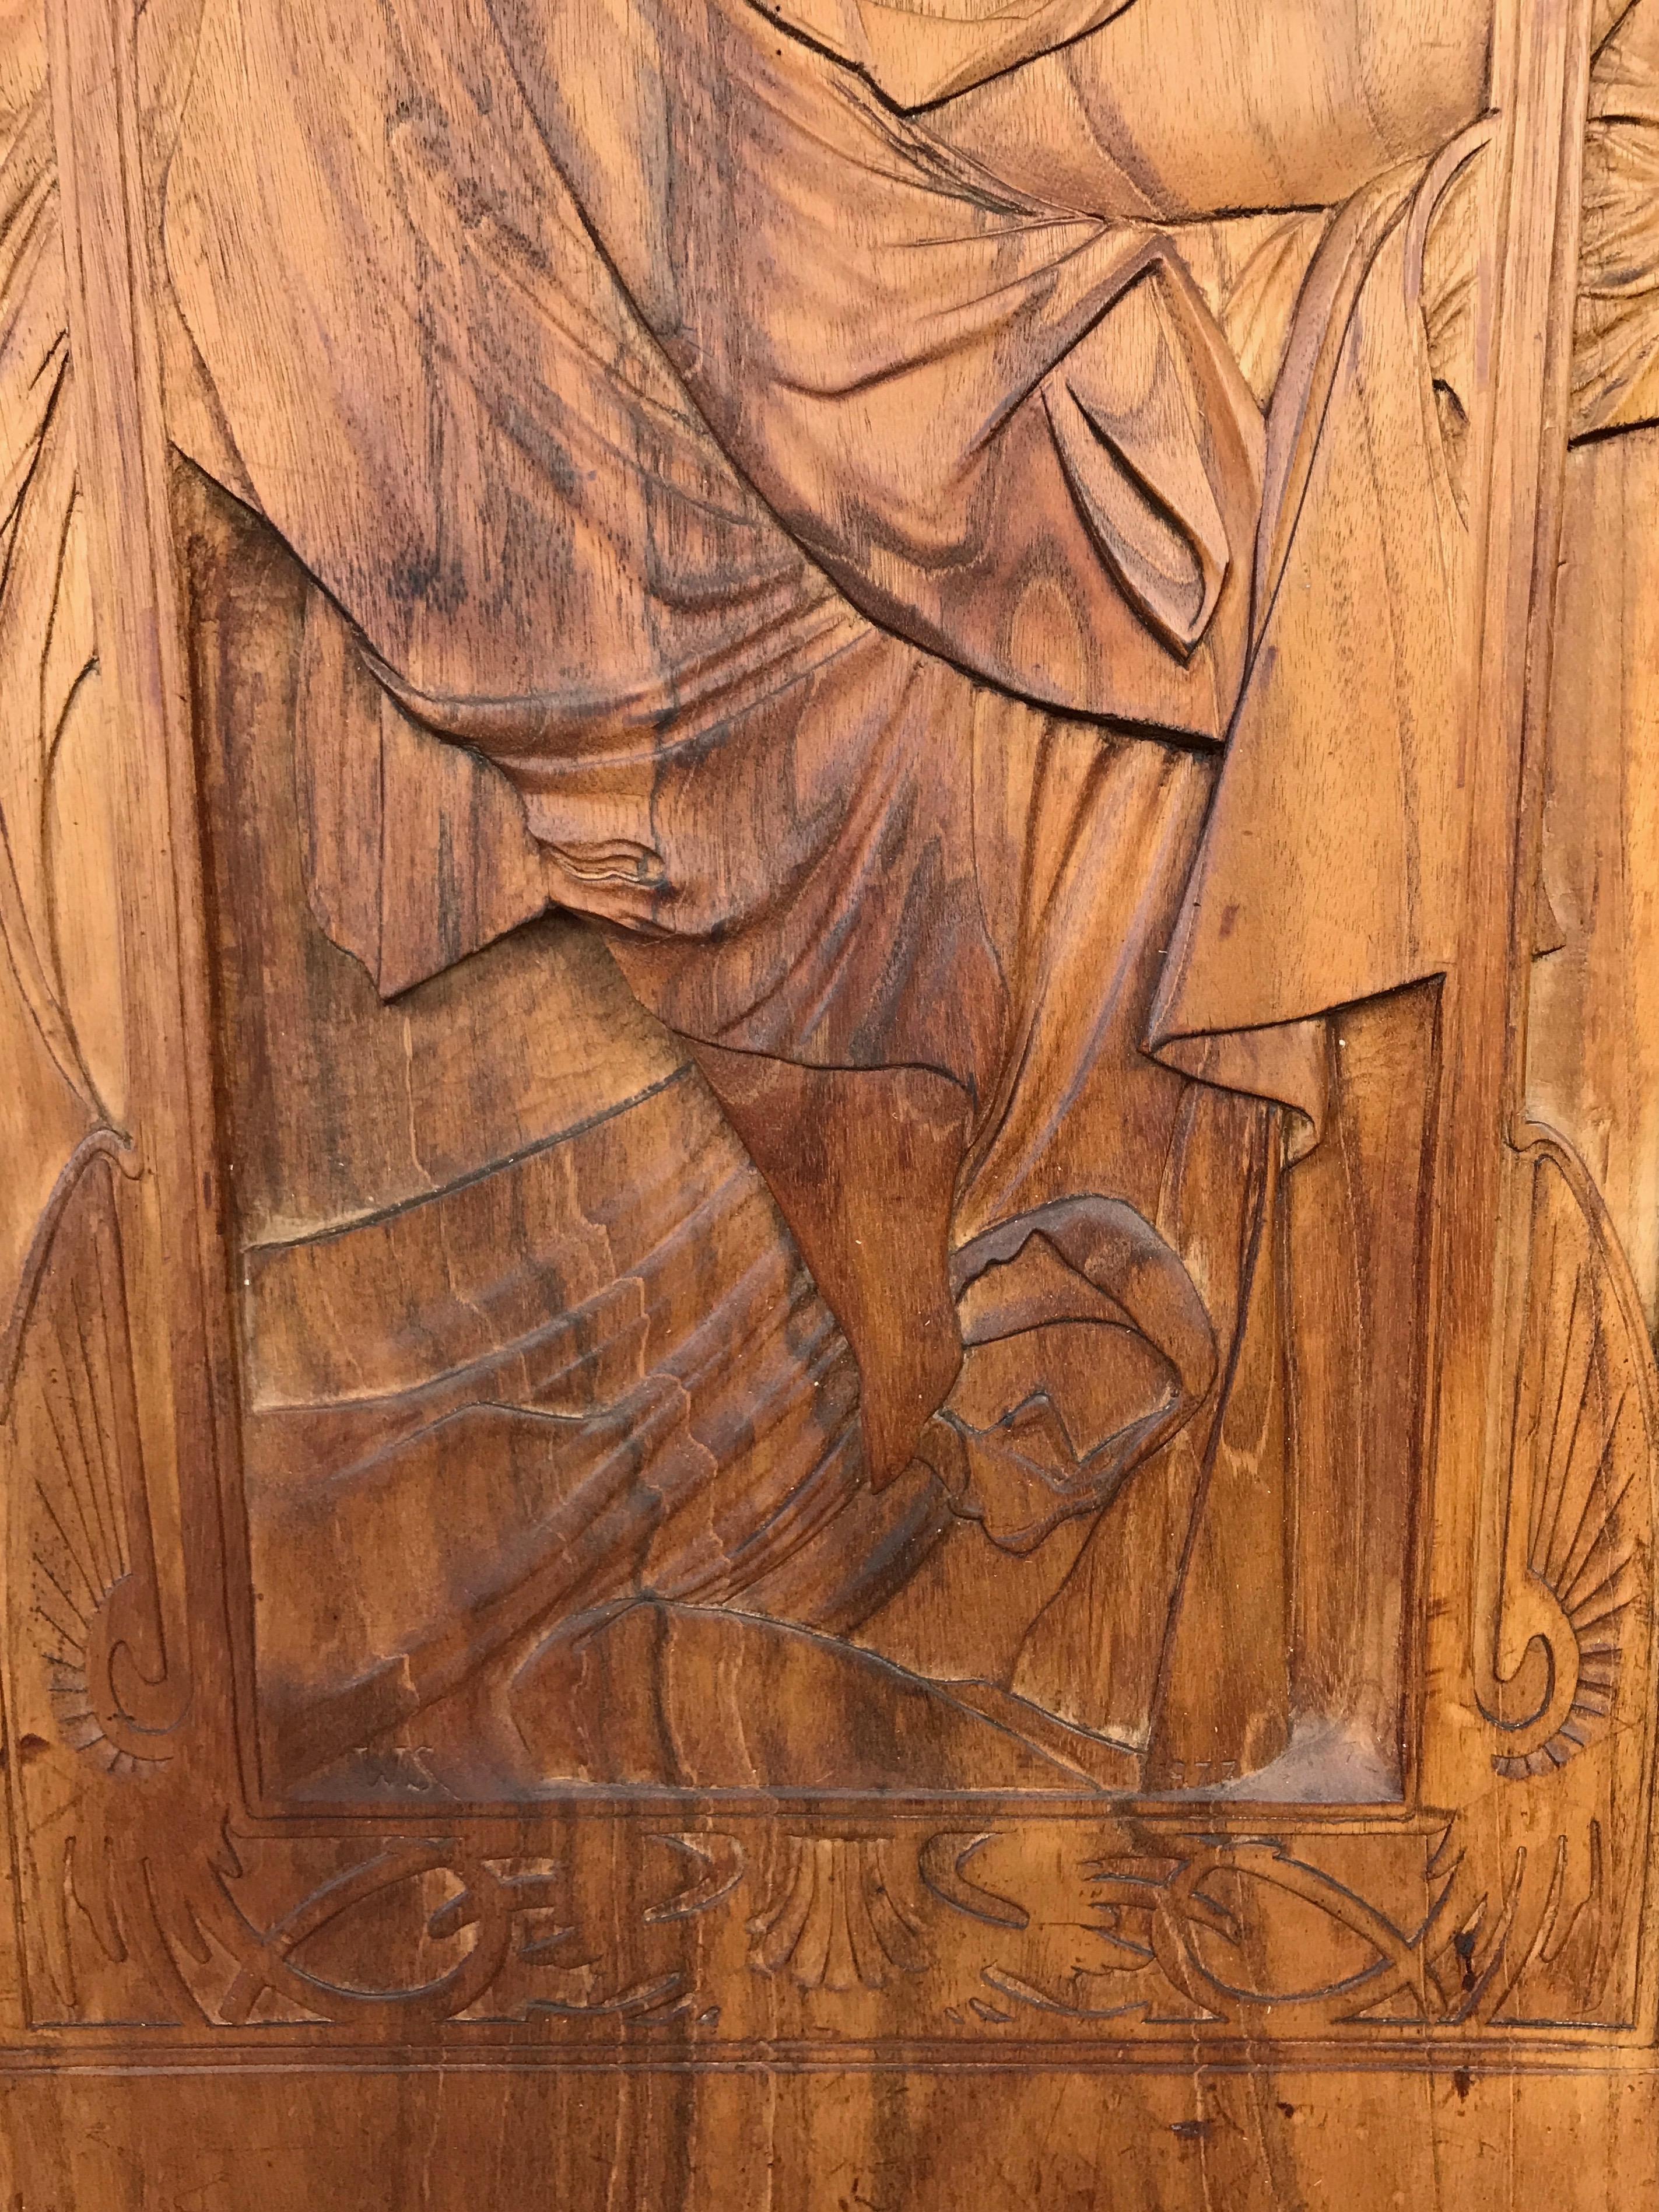 Late 20th Century Art Nouveau Carved Wood Panel after Alphonse Mucha’s “Repos de la Nuit”